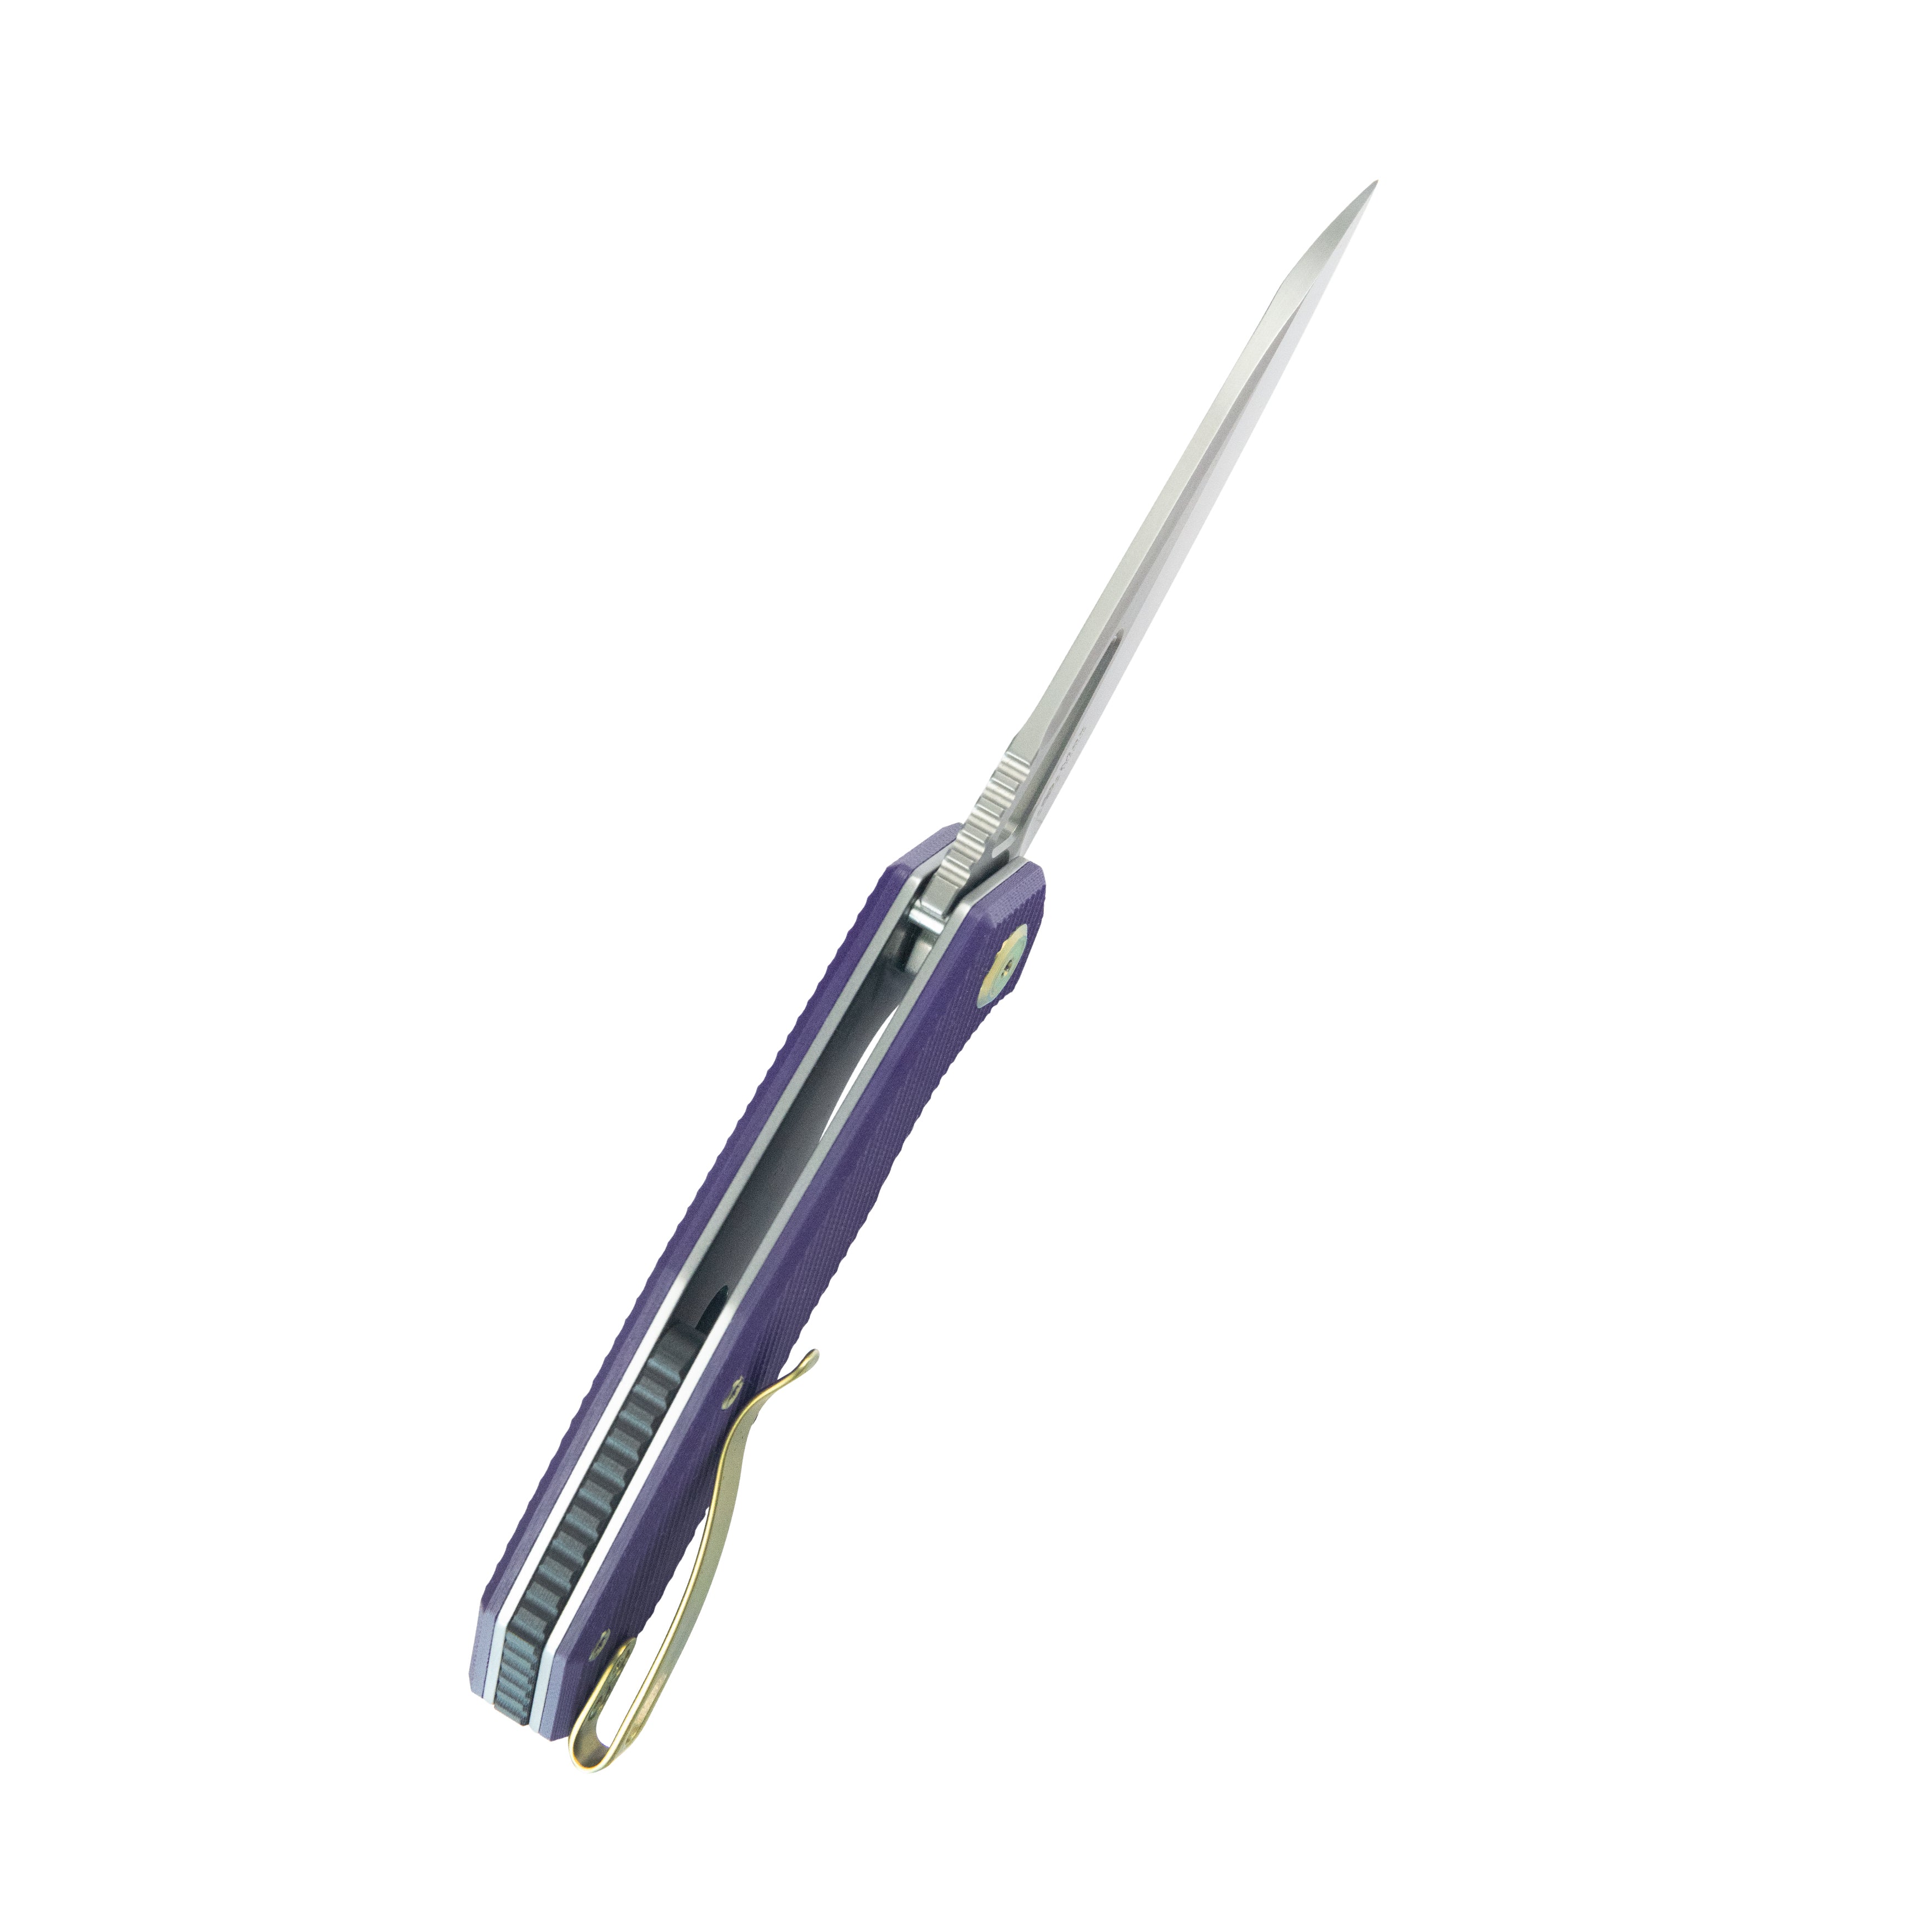 Kubey Vagrant Liner Lock Folding Knife Purple G10 Handle 3.1" Sandblast M390 KB291S